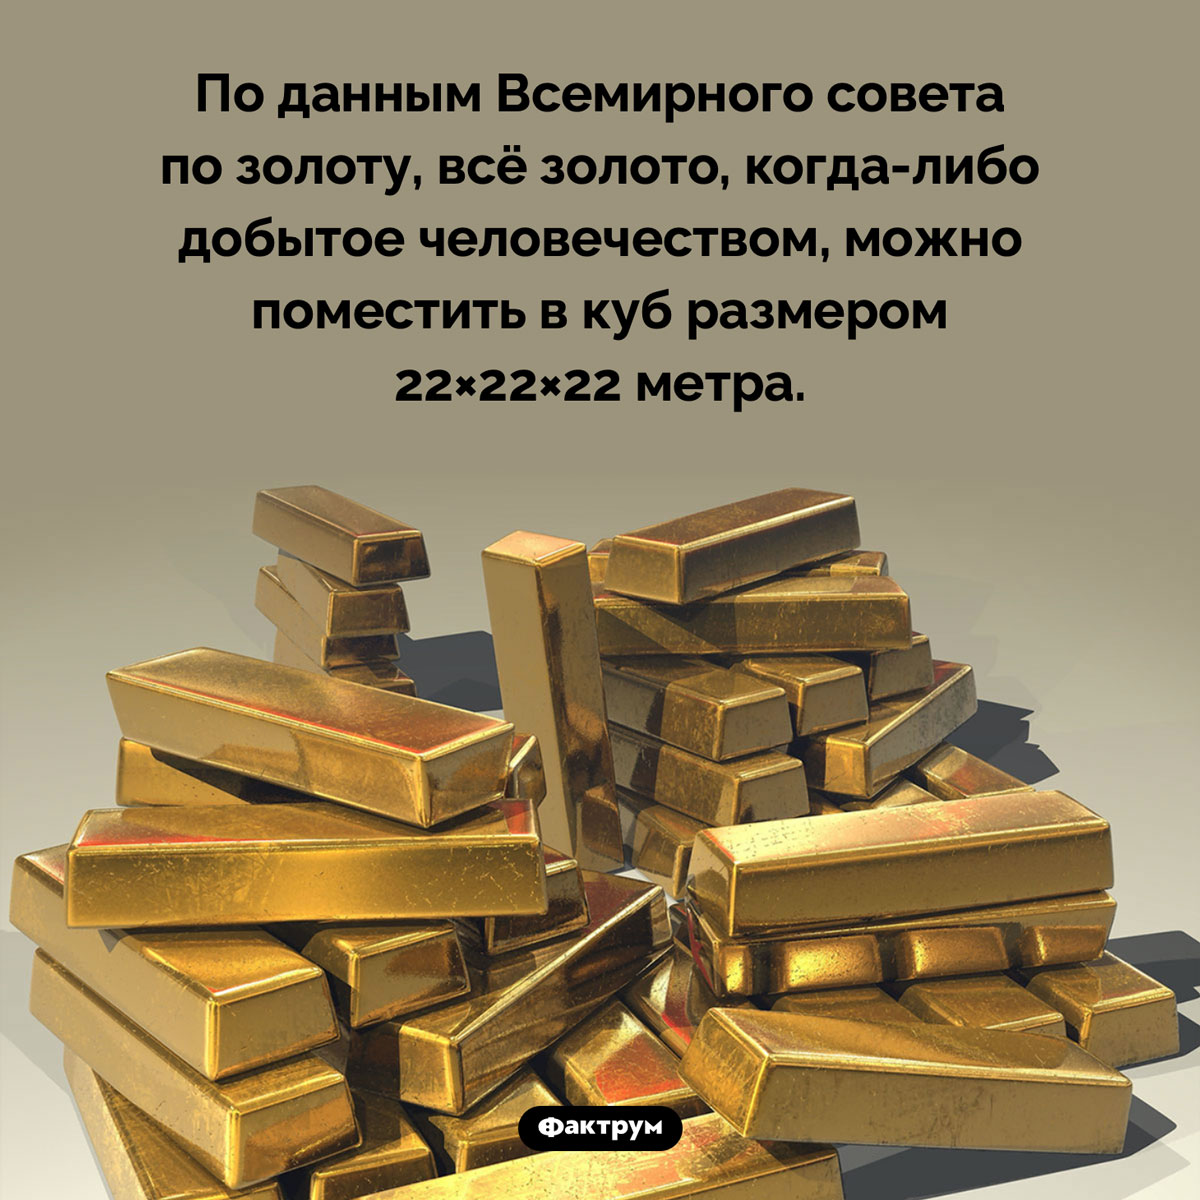 Сколько золота добыто человечеством. По данным Всемирного совета по золоту, всё золото, когда-либо добытое человечеством, можно поместить в куб размером 22×22×22 метра.